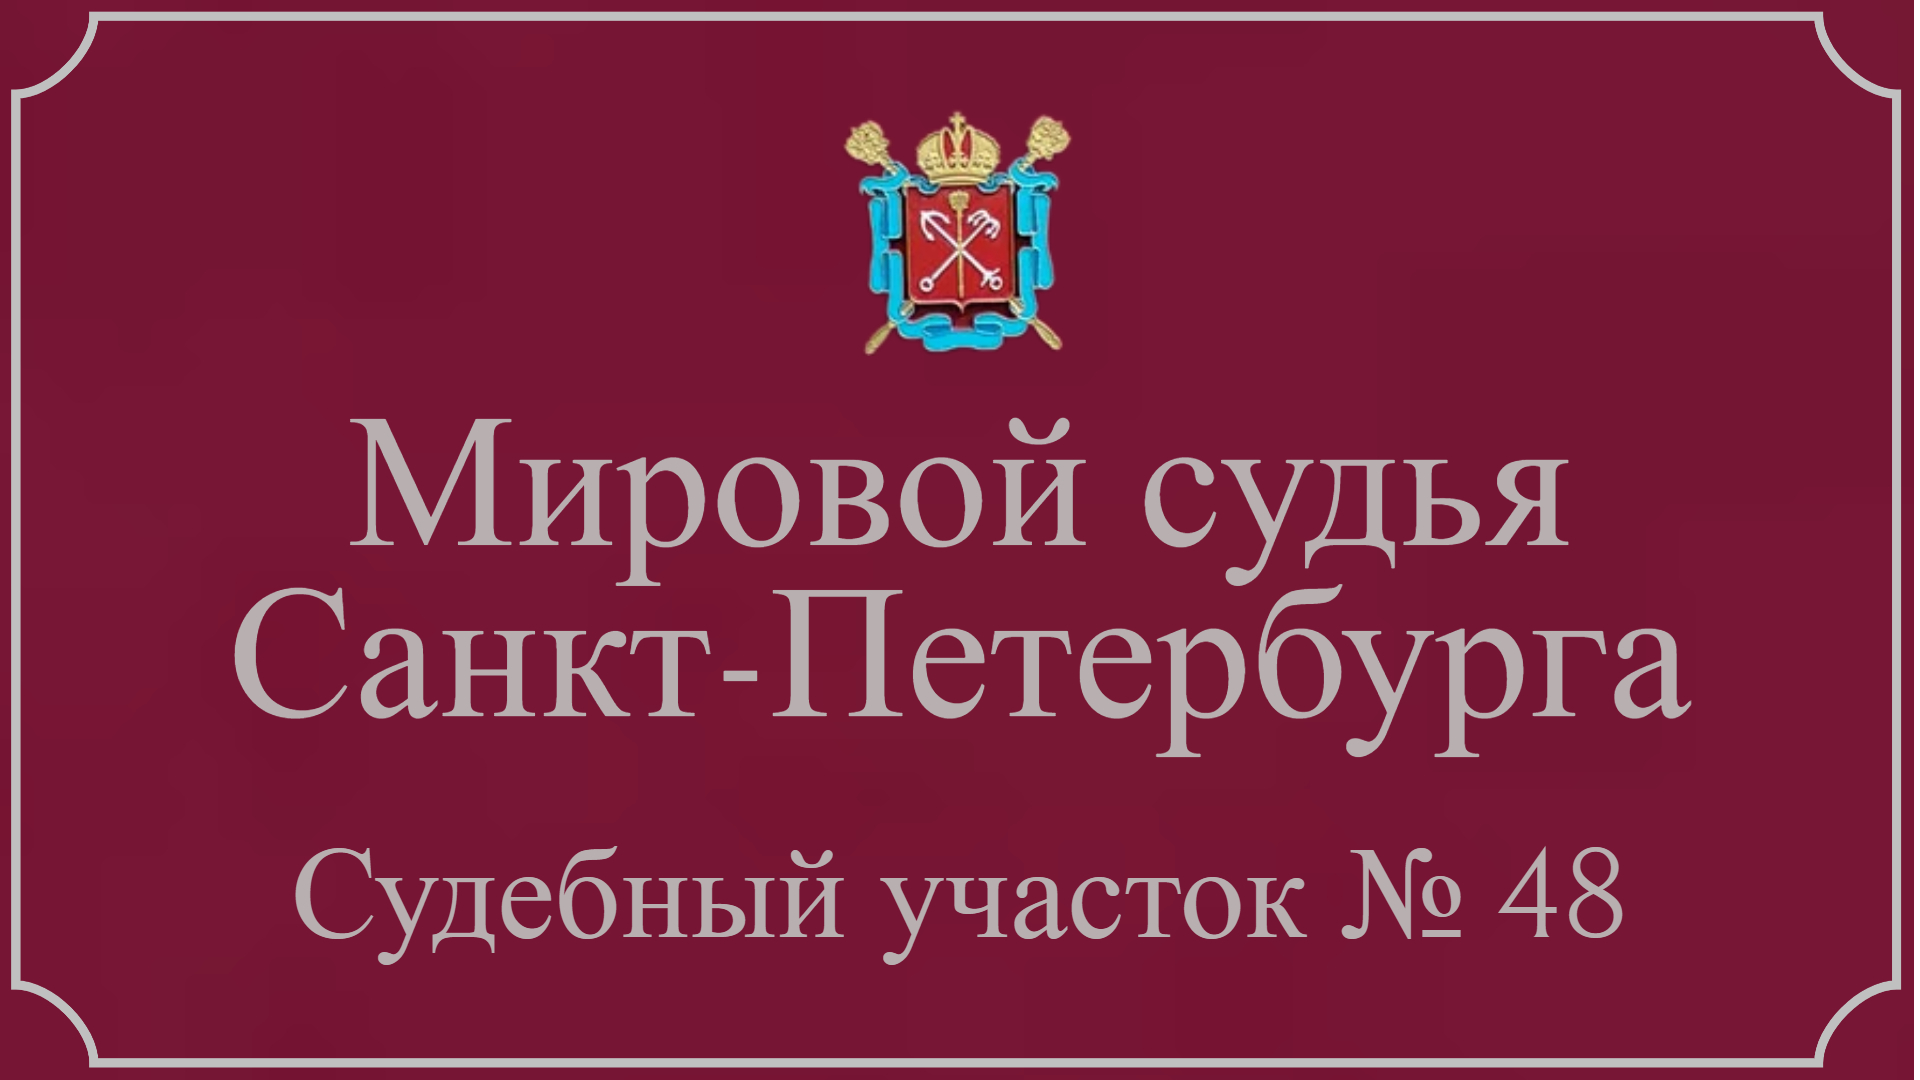 Информация по 48 судебному участку в Санкт-Петербурге.